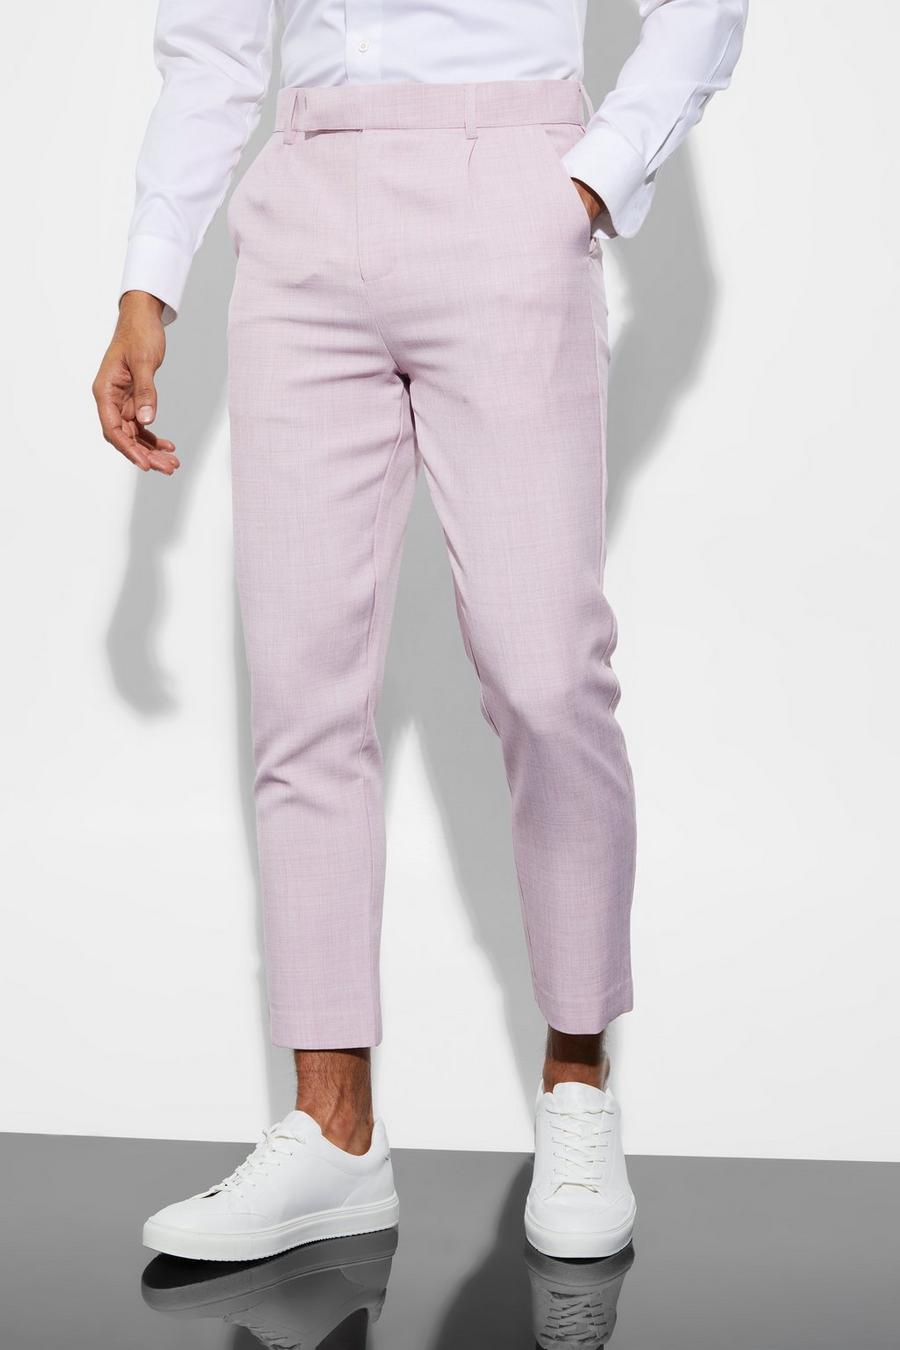 Pantaloni completo alla caviglia Slim Fit in tinta unita, Pale pink rosa